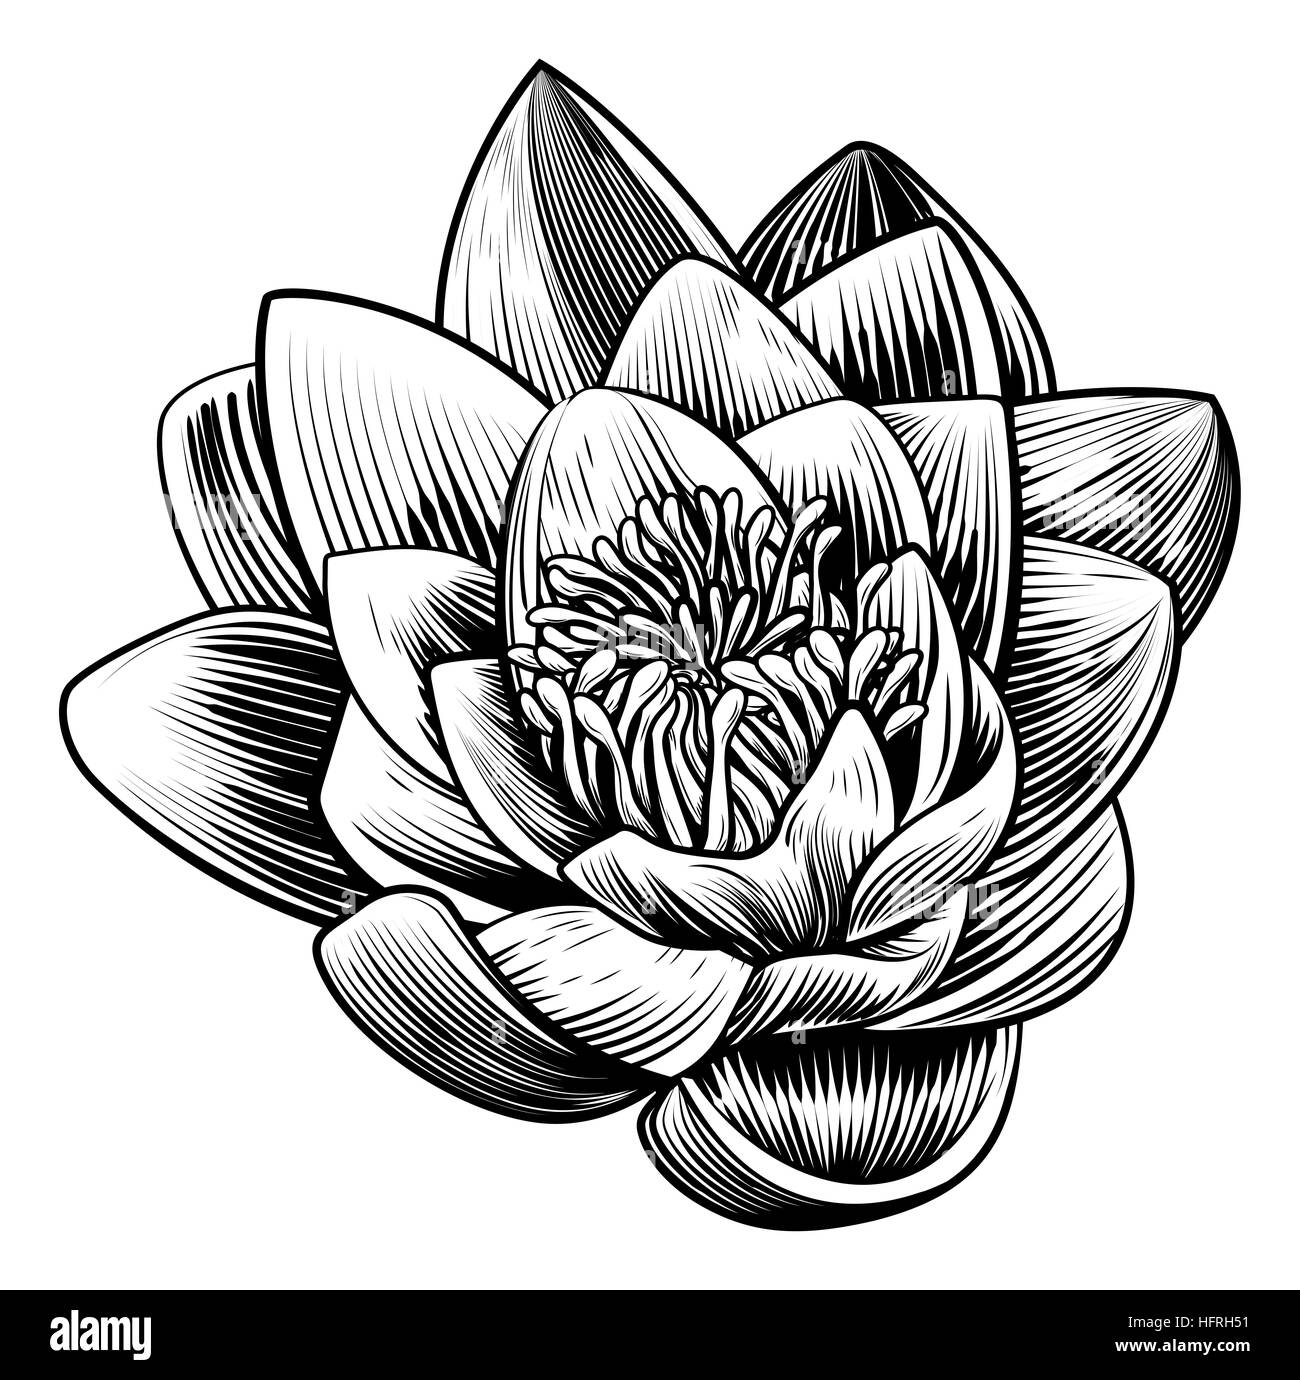 Un nénuphar fleur de lotus dans un style vintage gravure sur bois Gravure gravée Banque D'Images